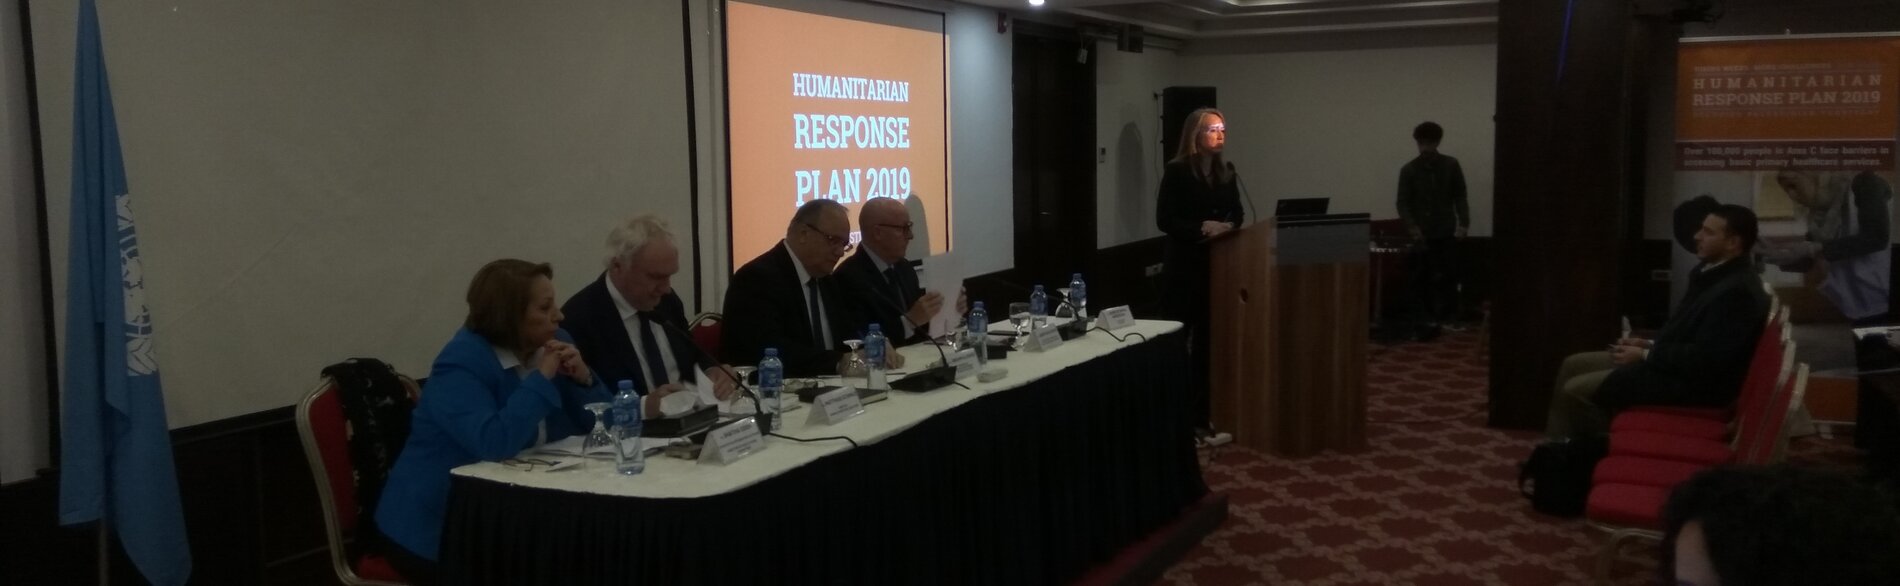 Launch of the 2019 Humanitarian Response Plan, Ramallah, 17 December 2018 